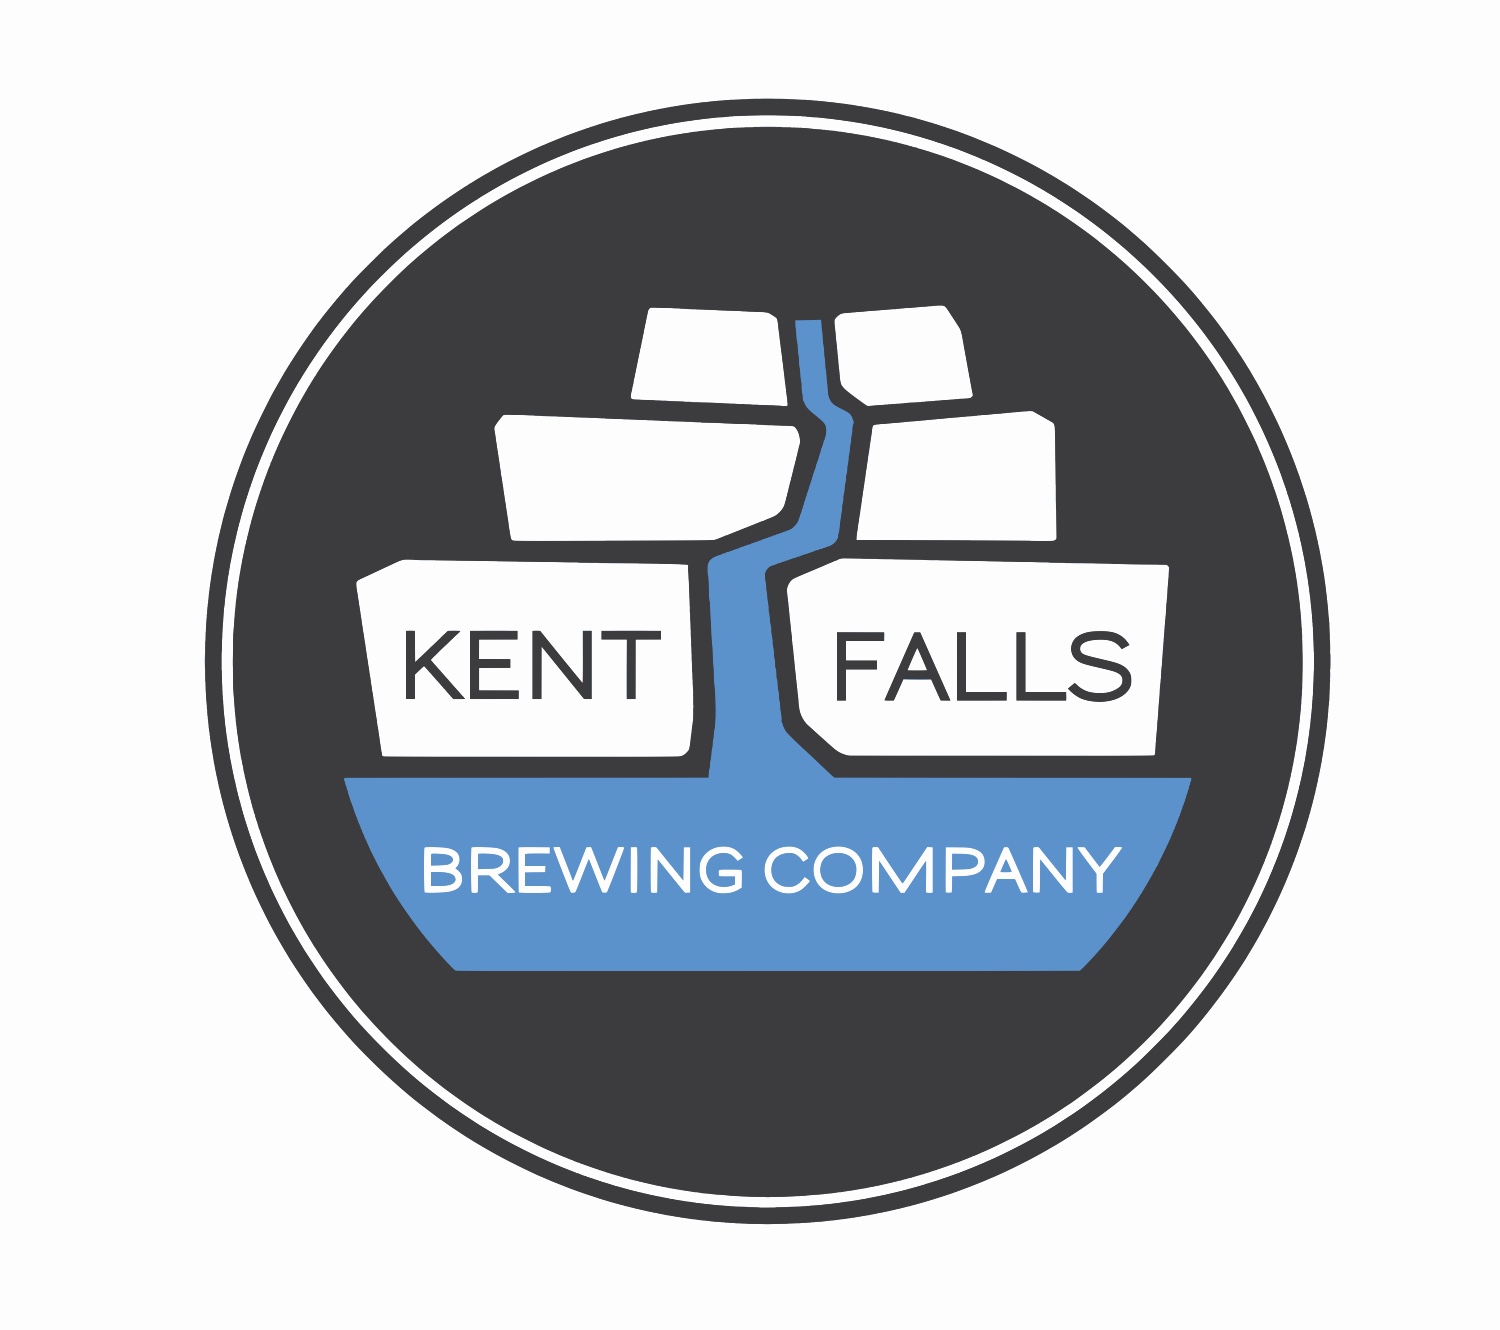 Kent Falls Brewing Company